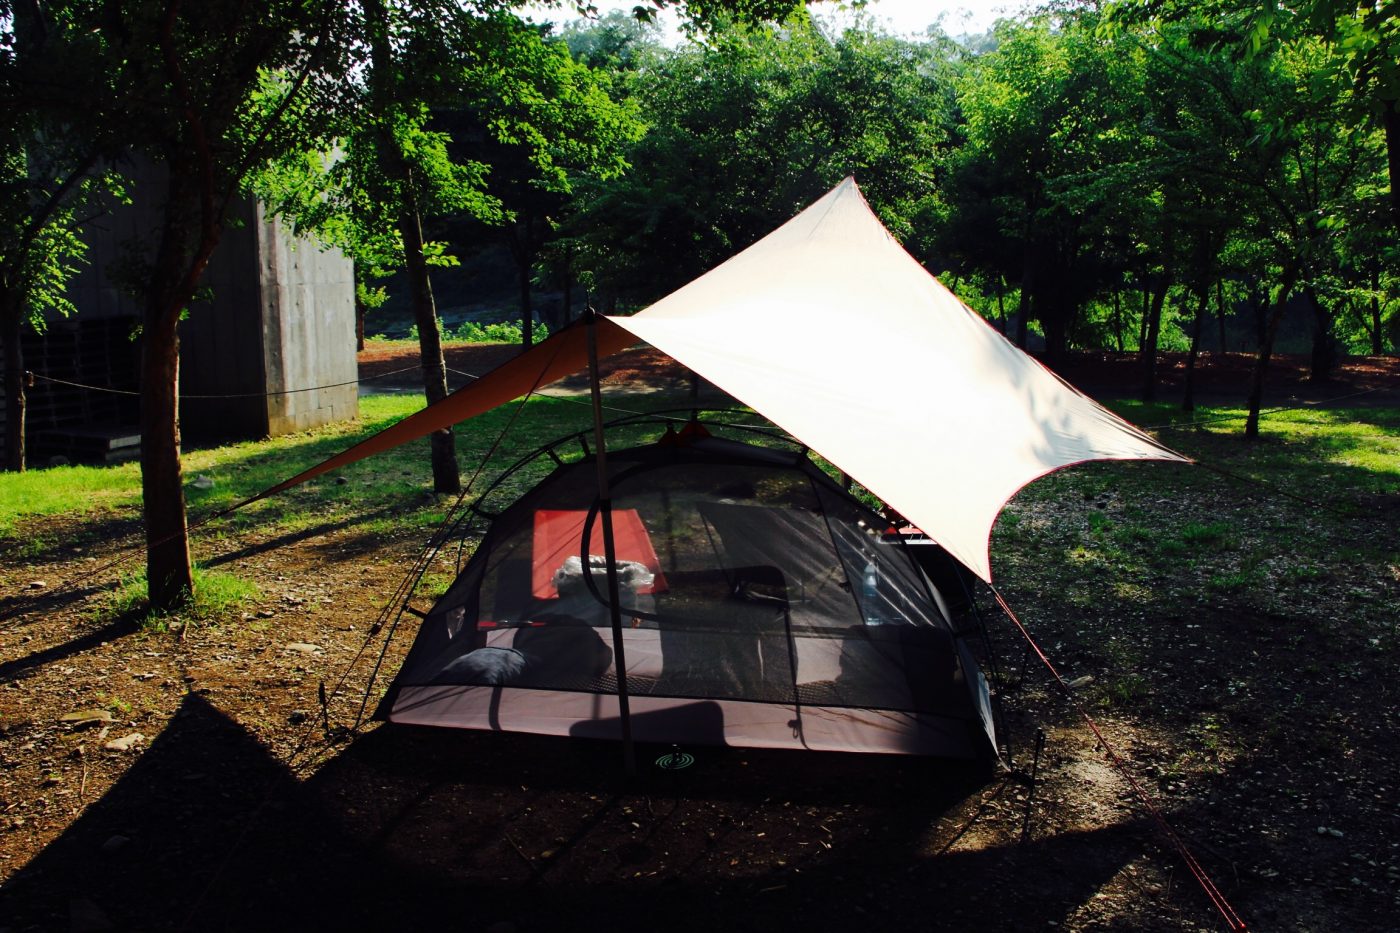 ソロキャンパー向け 暑くて眠れない そんな時はインナーテントのみでメッシュにして寝ましょう キャンプ初心者向け総合情報ブログ Hyper Camp Creators